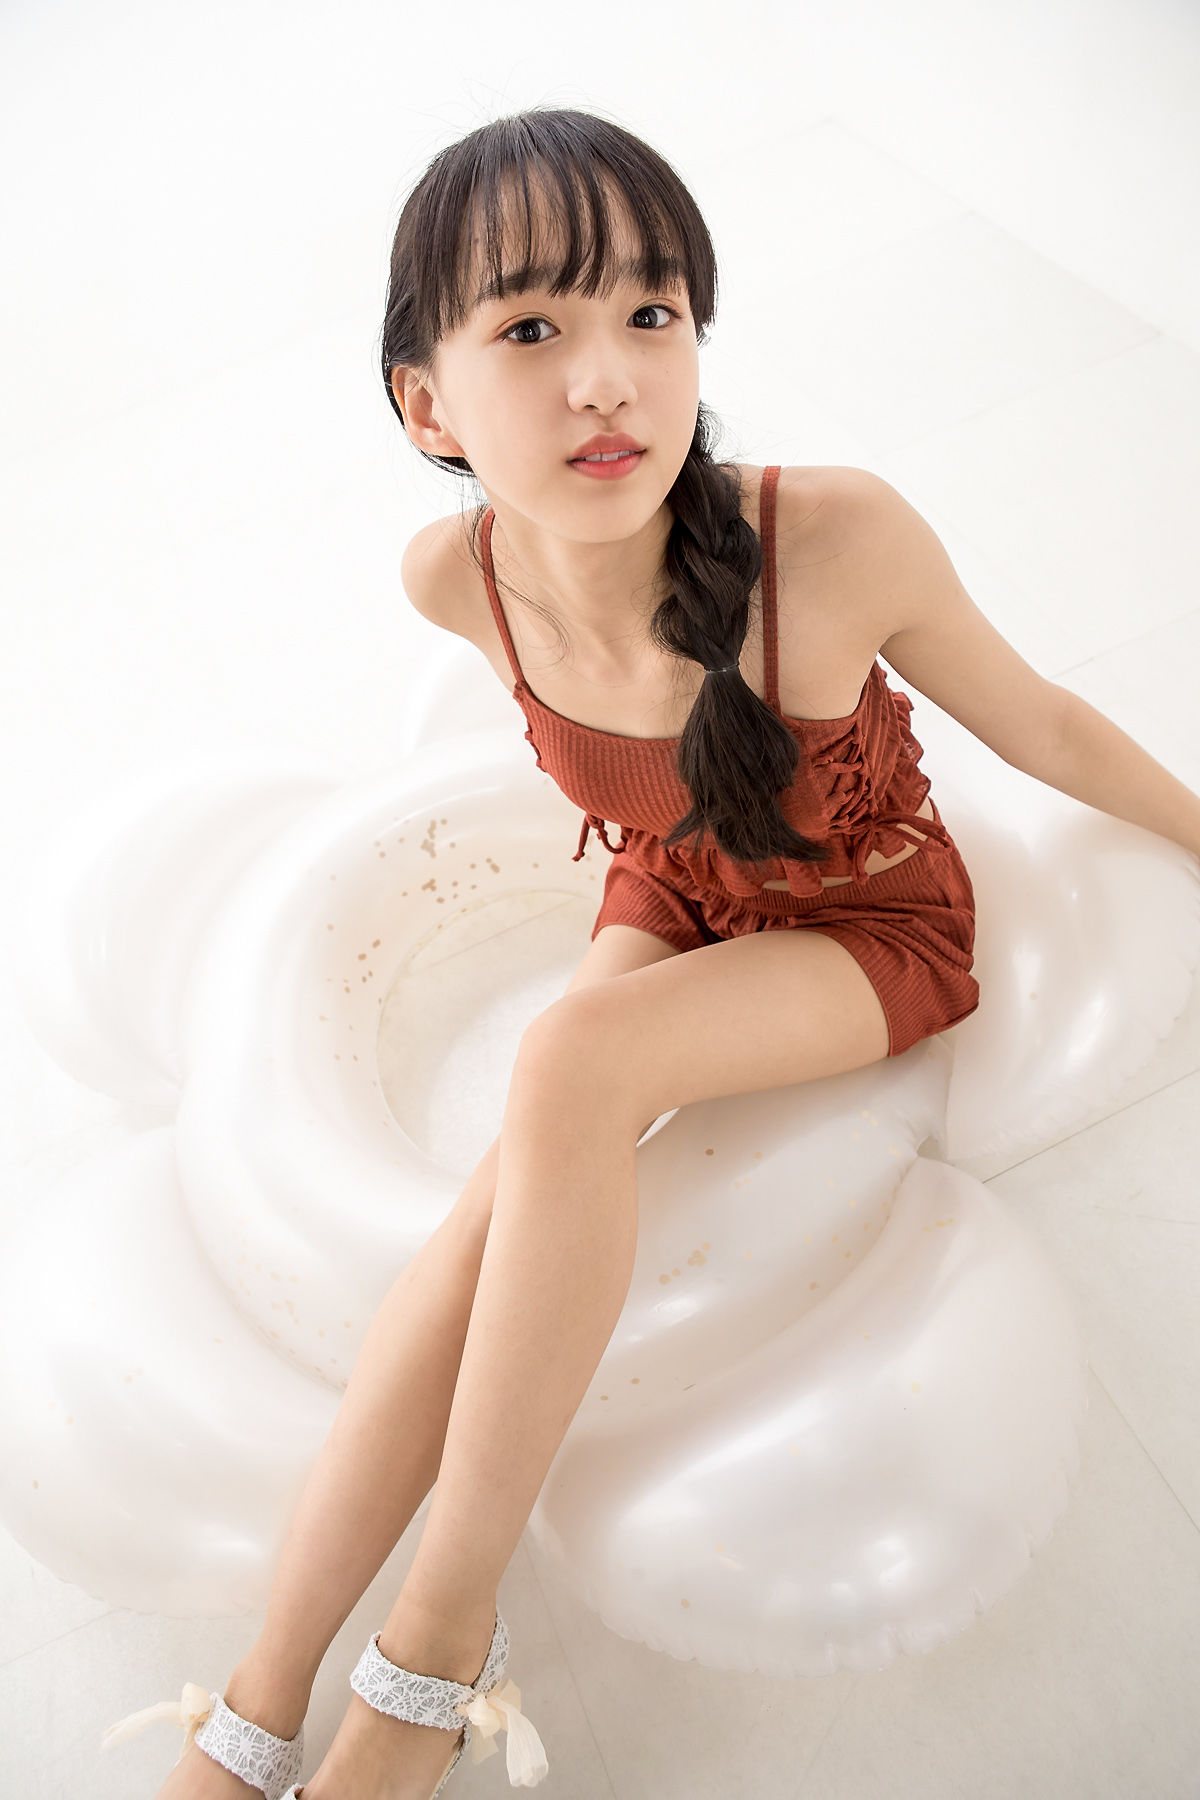 [Minisuka.tv] Yuna Sakiyama 咲山ゆな - Fresh-idol Gallery 04 Page 50 No.d2f20a